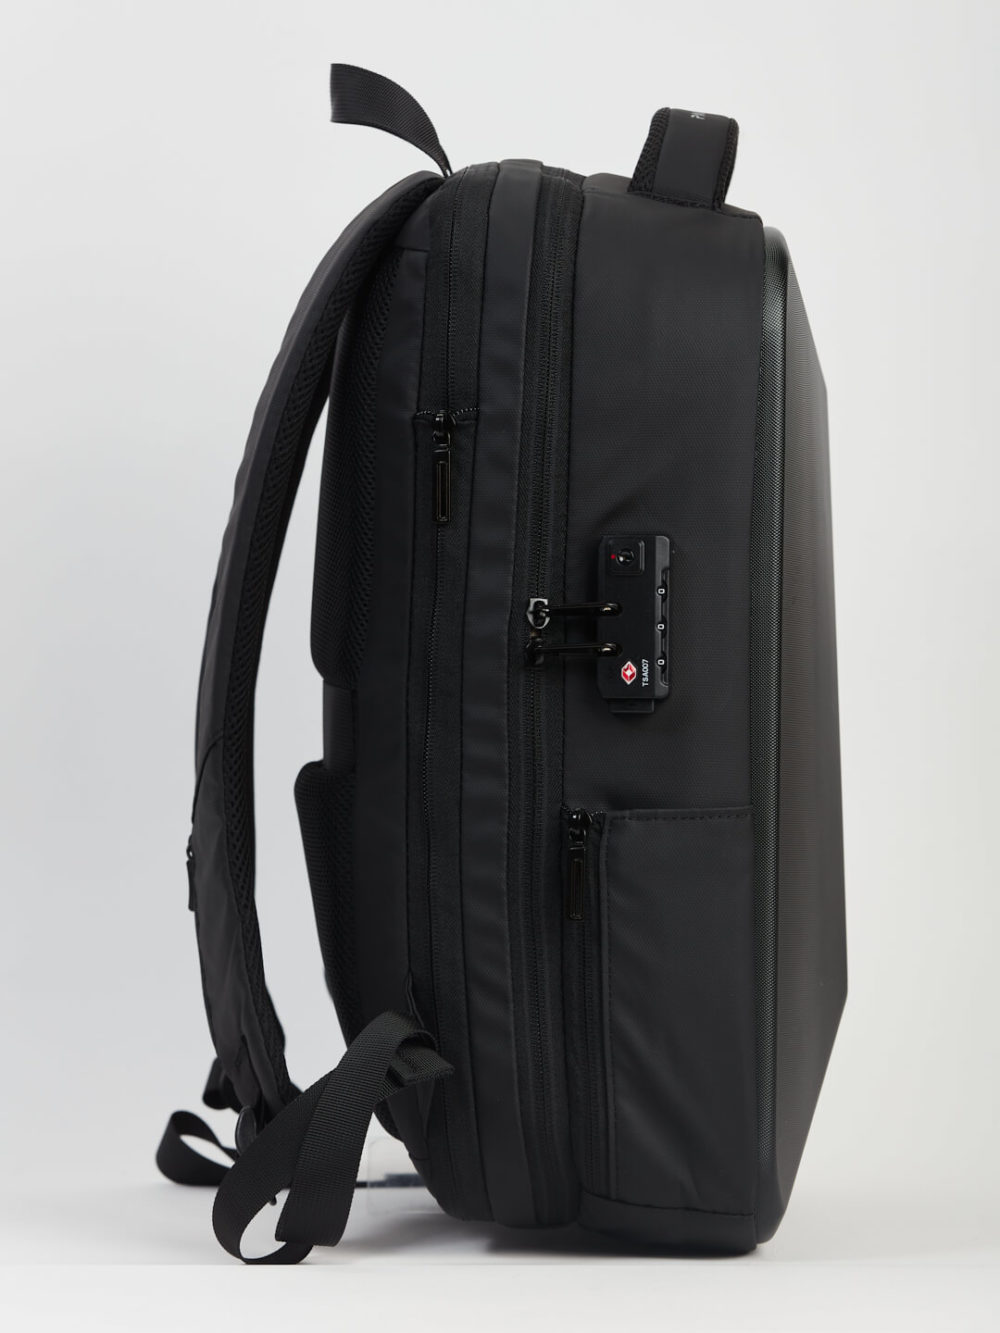 Vue latérale d'un sac à dos noir avec de nombreux compartiments et une serrure à combinaison, sur un simple fond blanc.